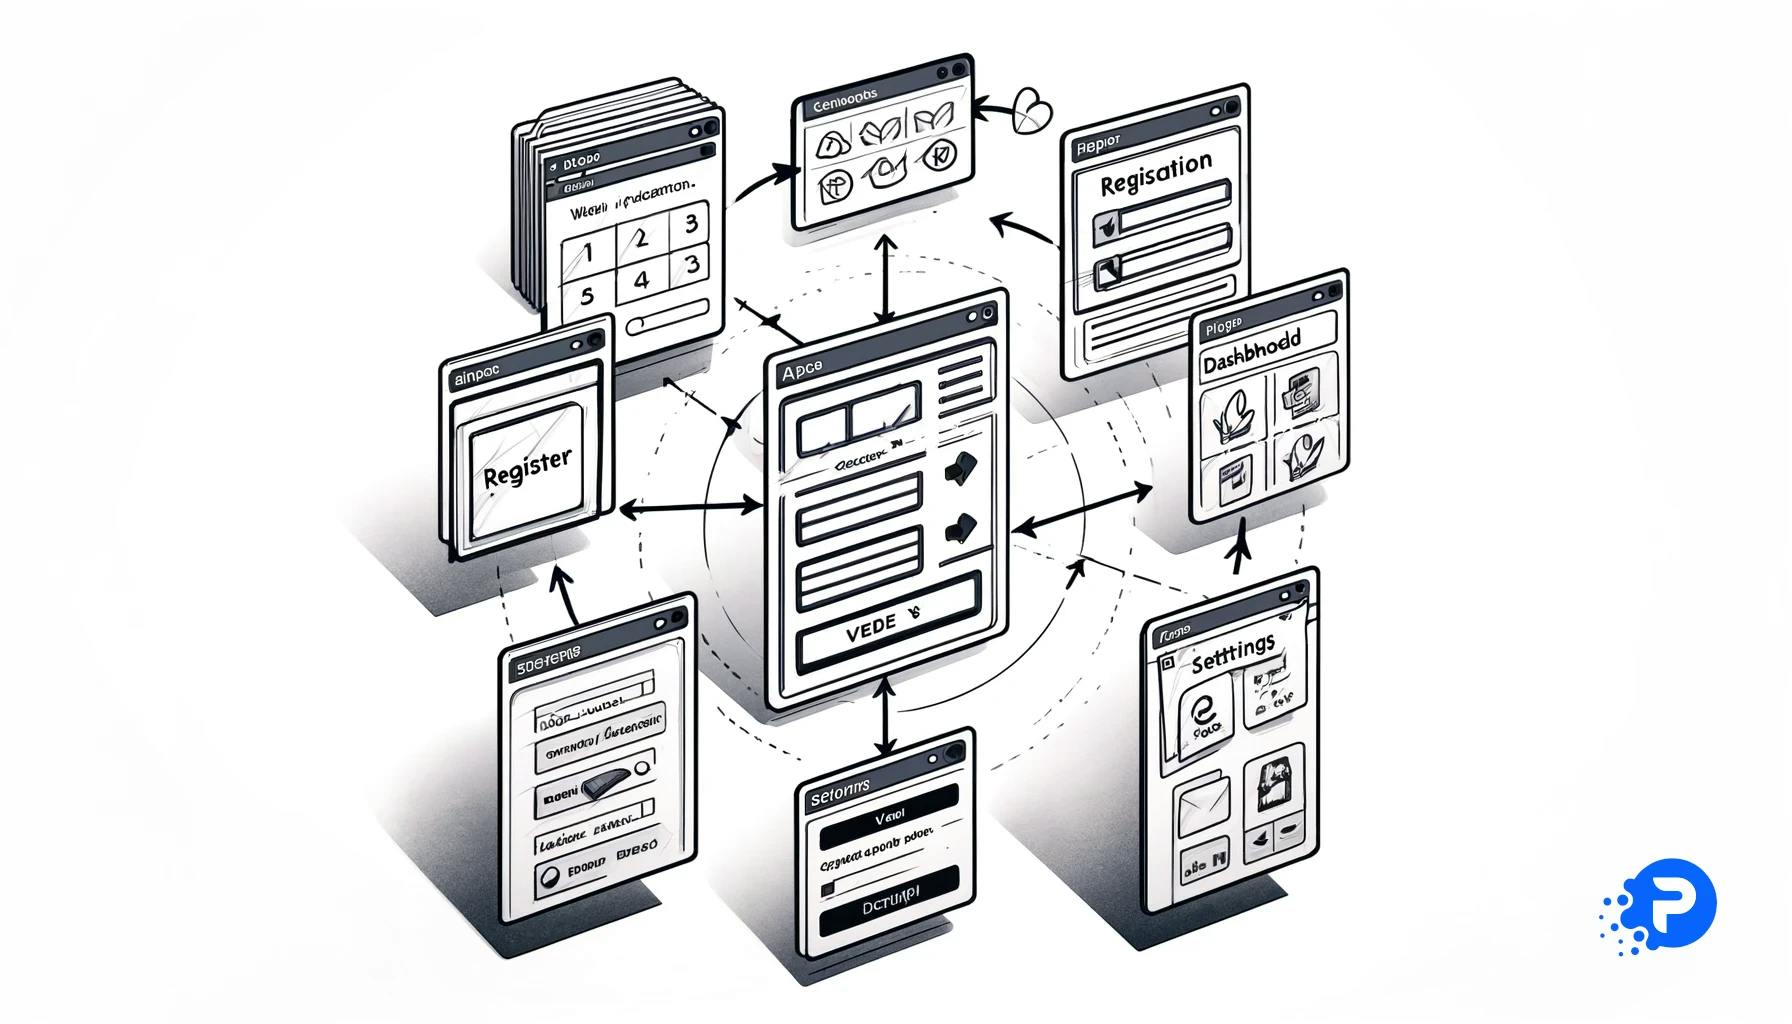 Ilustração minimalista mostrando a sequência de esboços em folhas A4 para uma aplicação web: Tela de Boas-Vindas, Registro, Dashboard e Configurações, conectadas por setas, destacando o processo de planejamento e visualização.